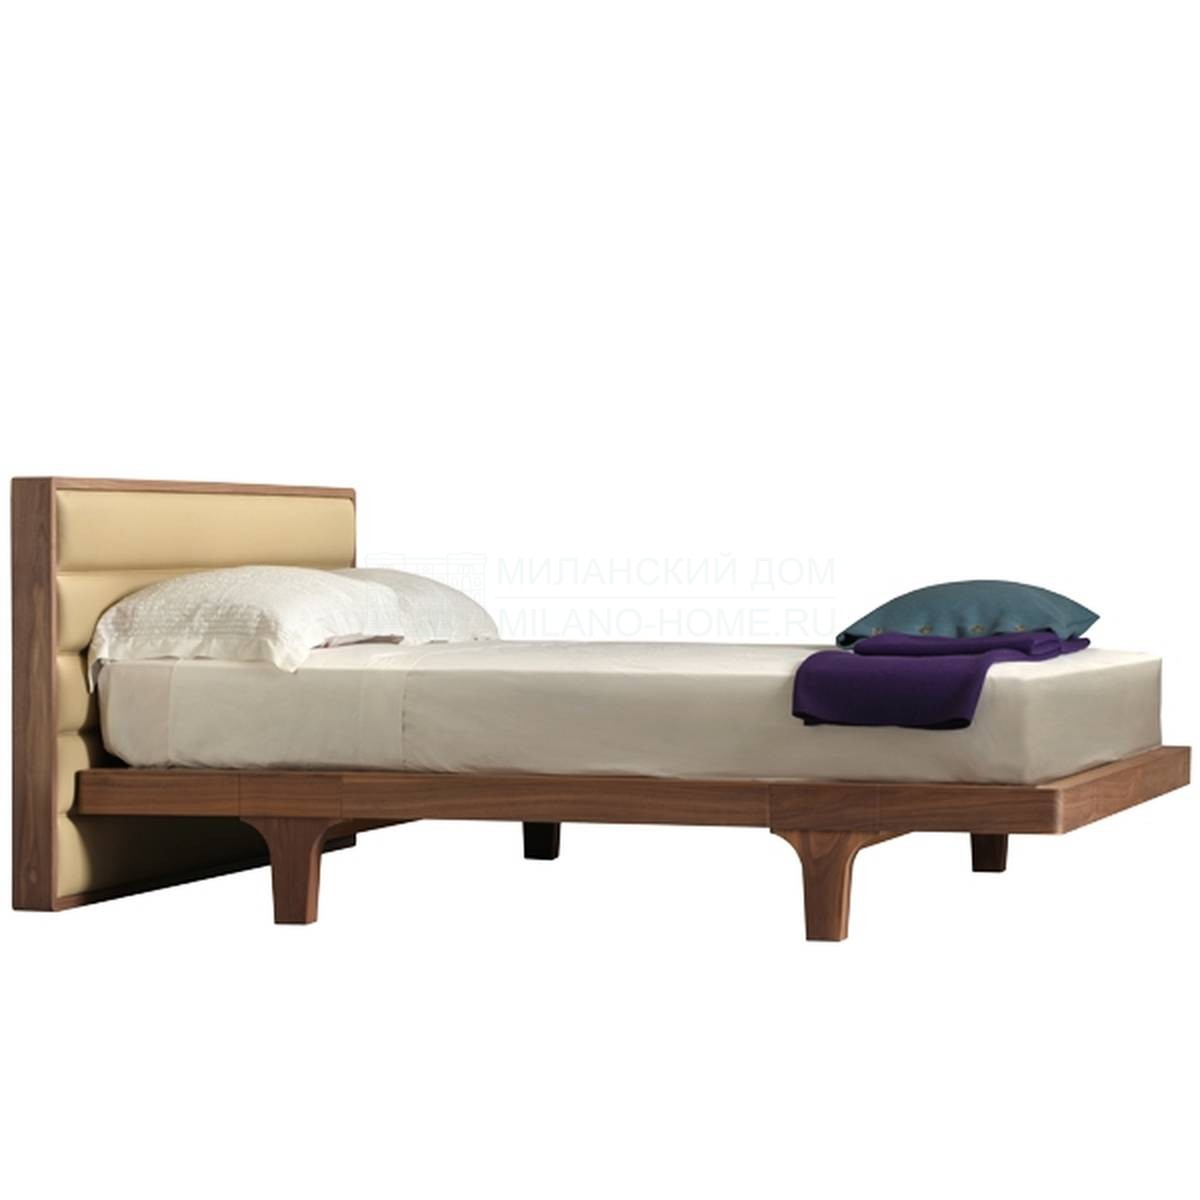 Кровать с комбинированным изголовьем Malibu' art.2894/N из Италии фабрики MORELATO